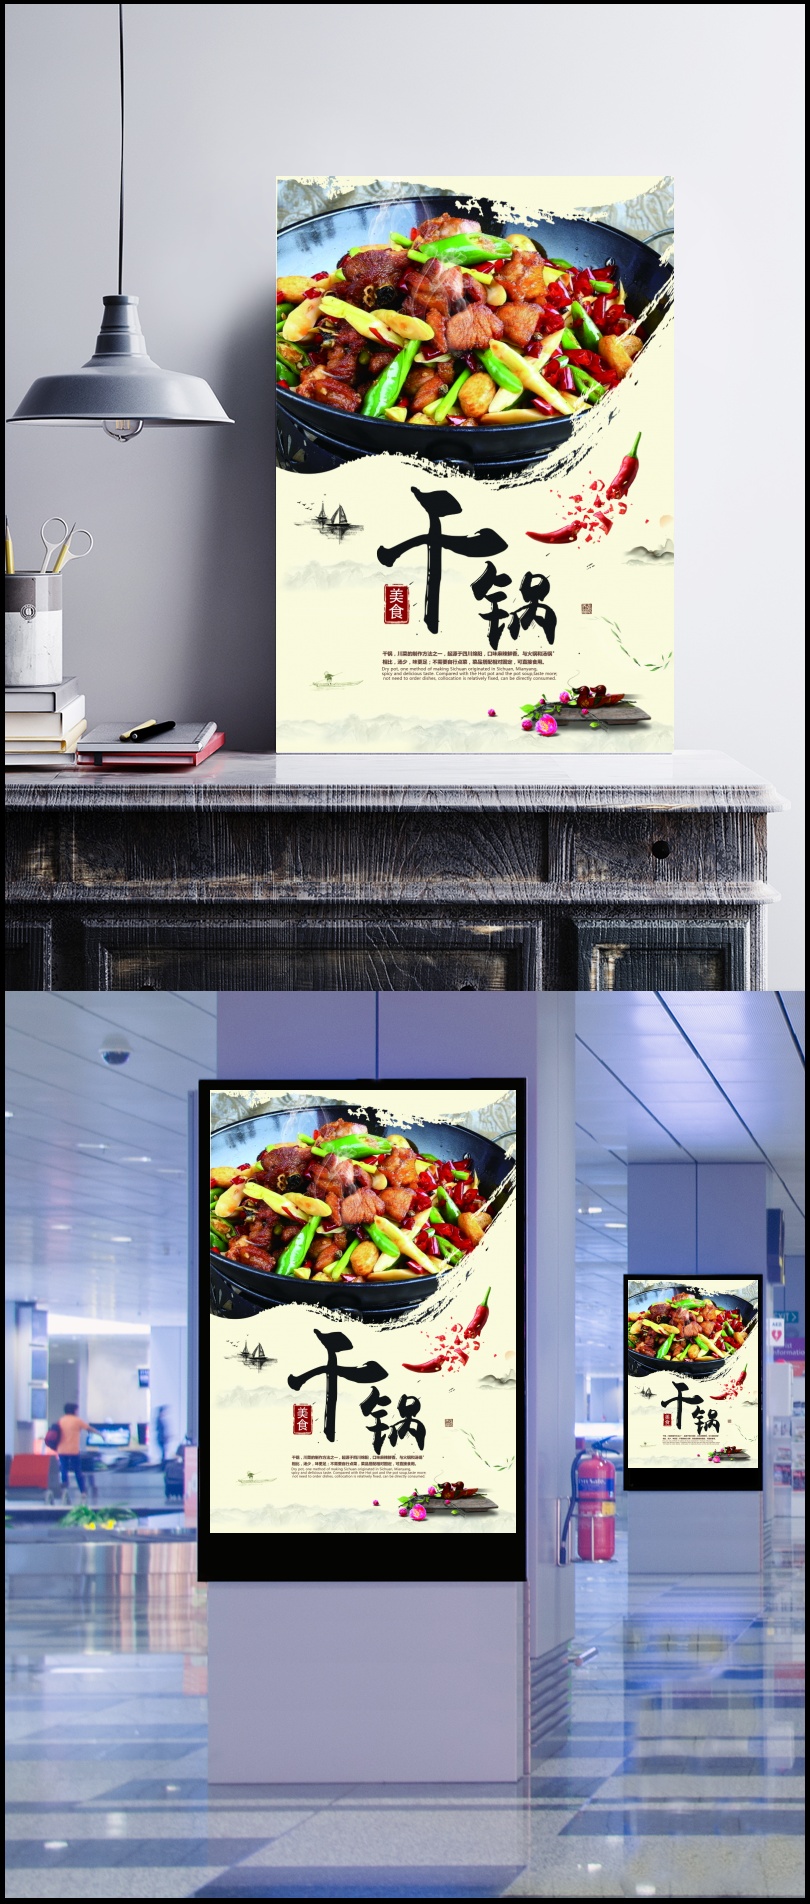 餐厅干锅招牌菜海报PSD素材